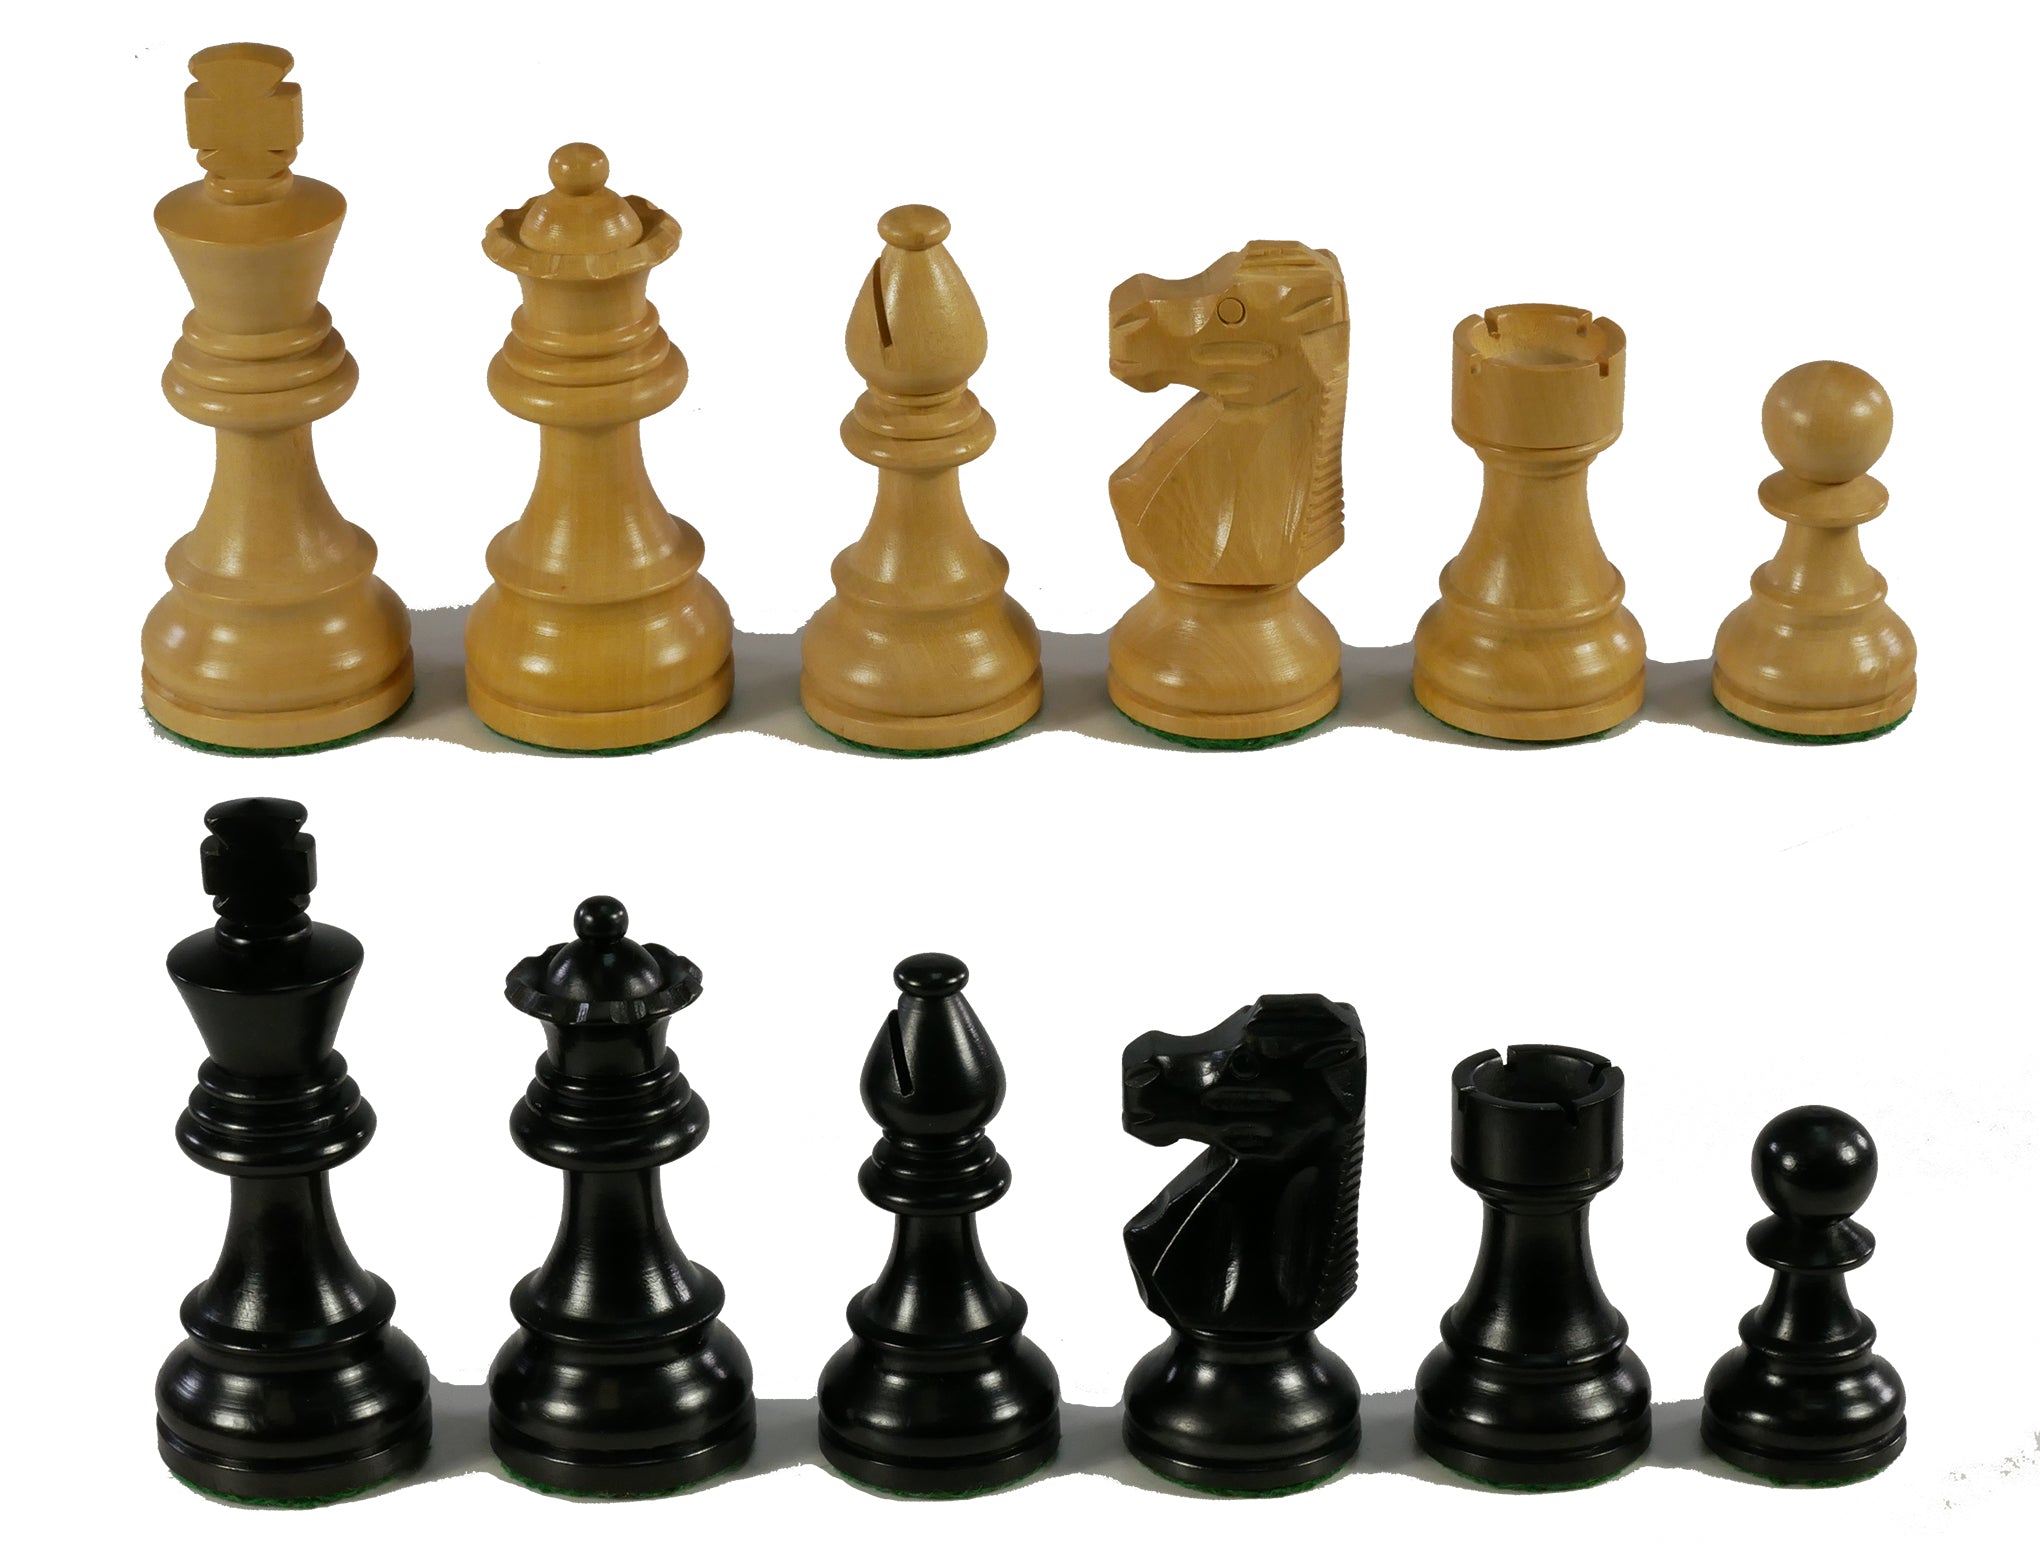 Chessmen - Medium Black French Chessmen